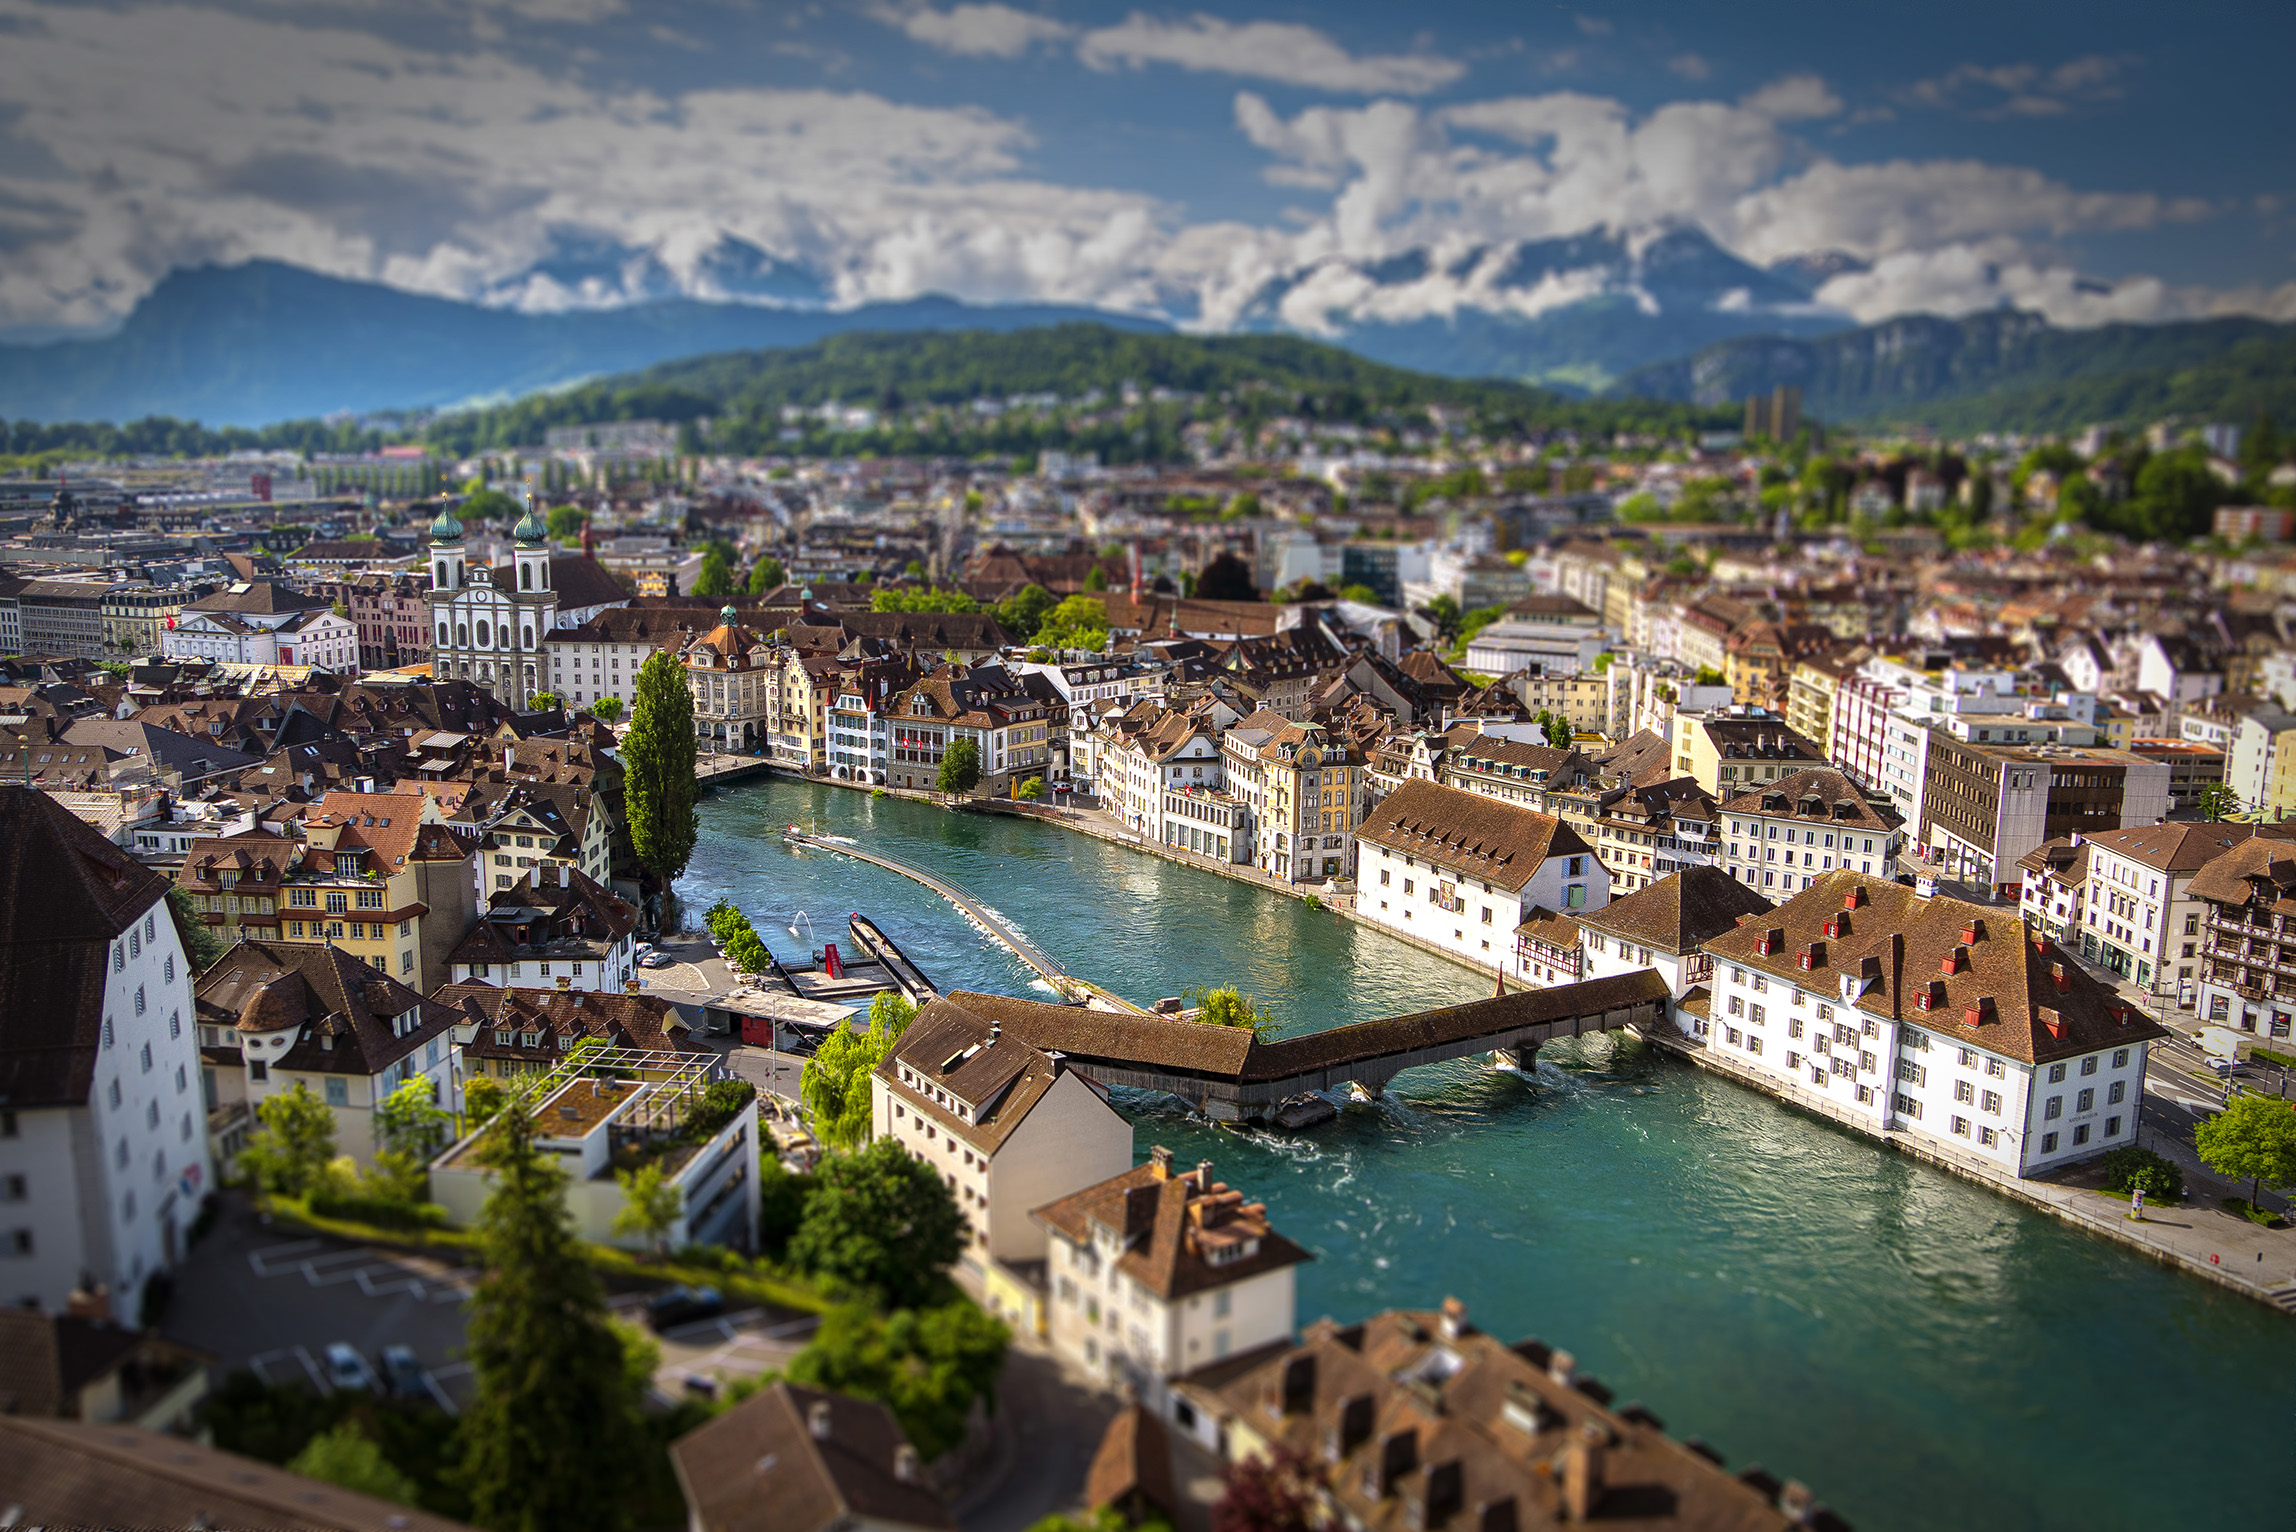 Lucerne, Switzerland